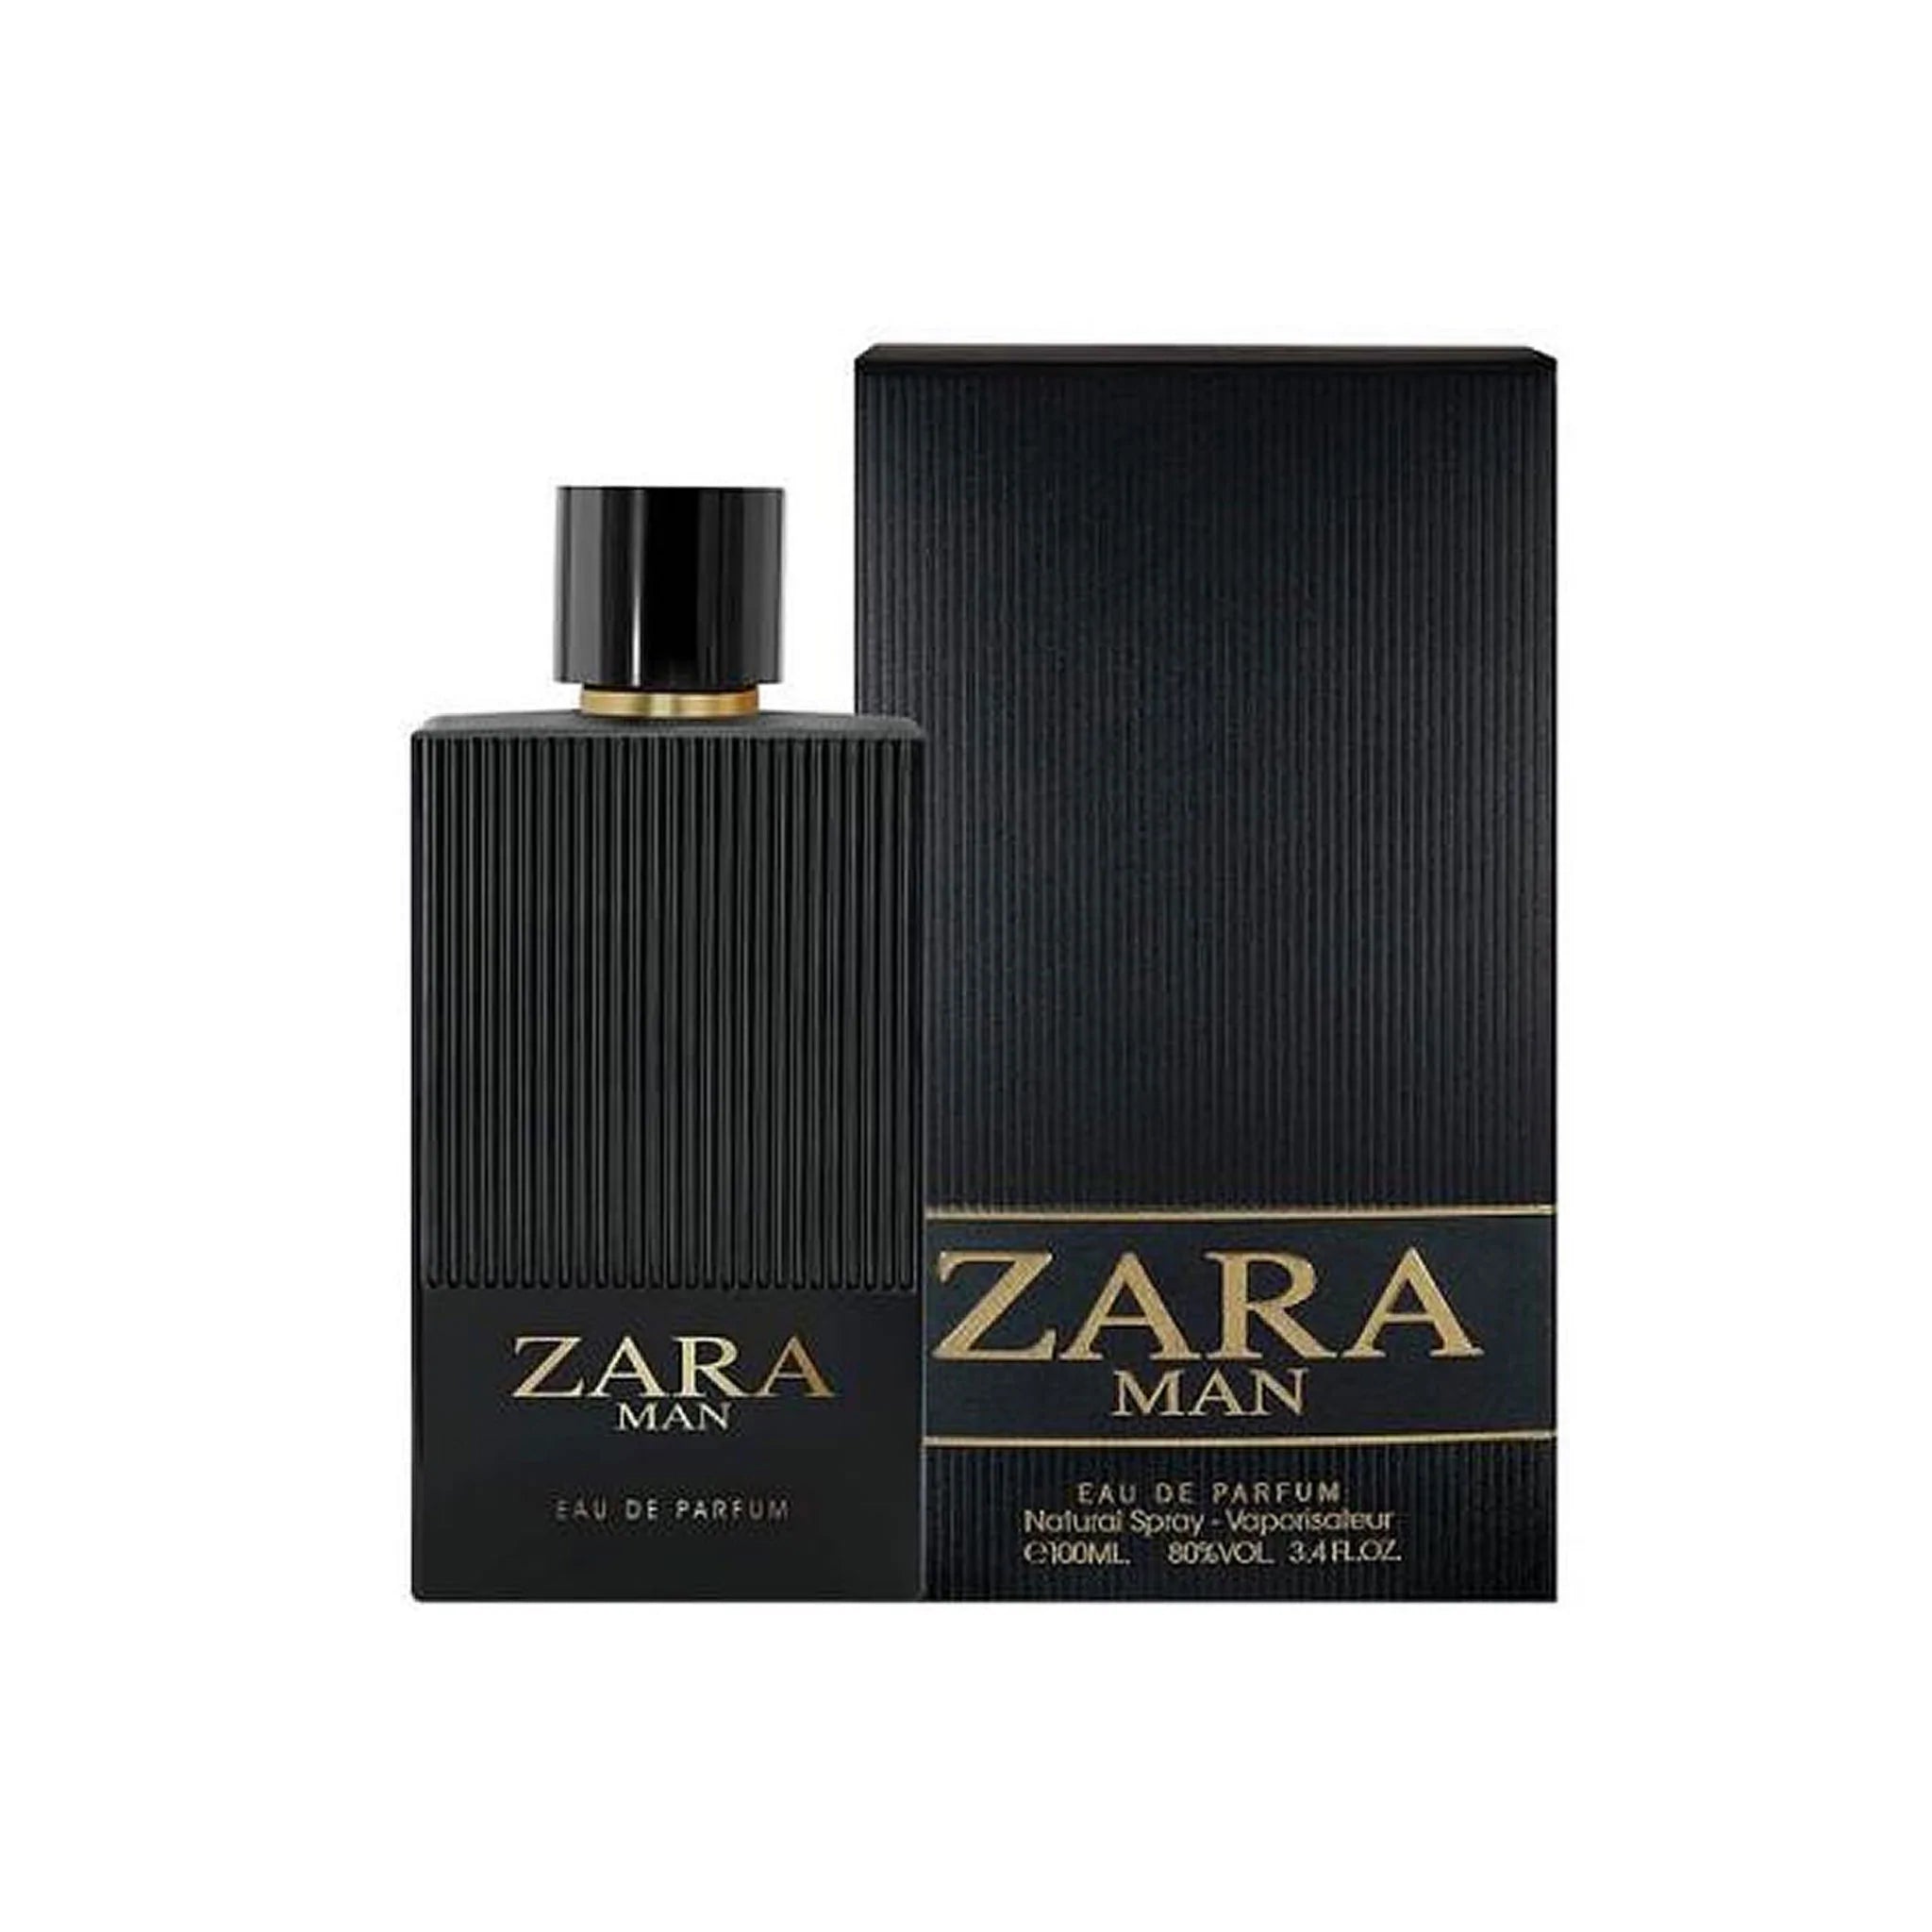 Fragrance World Zara Man 100ml Edp Perfume For Men